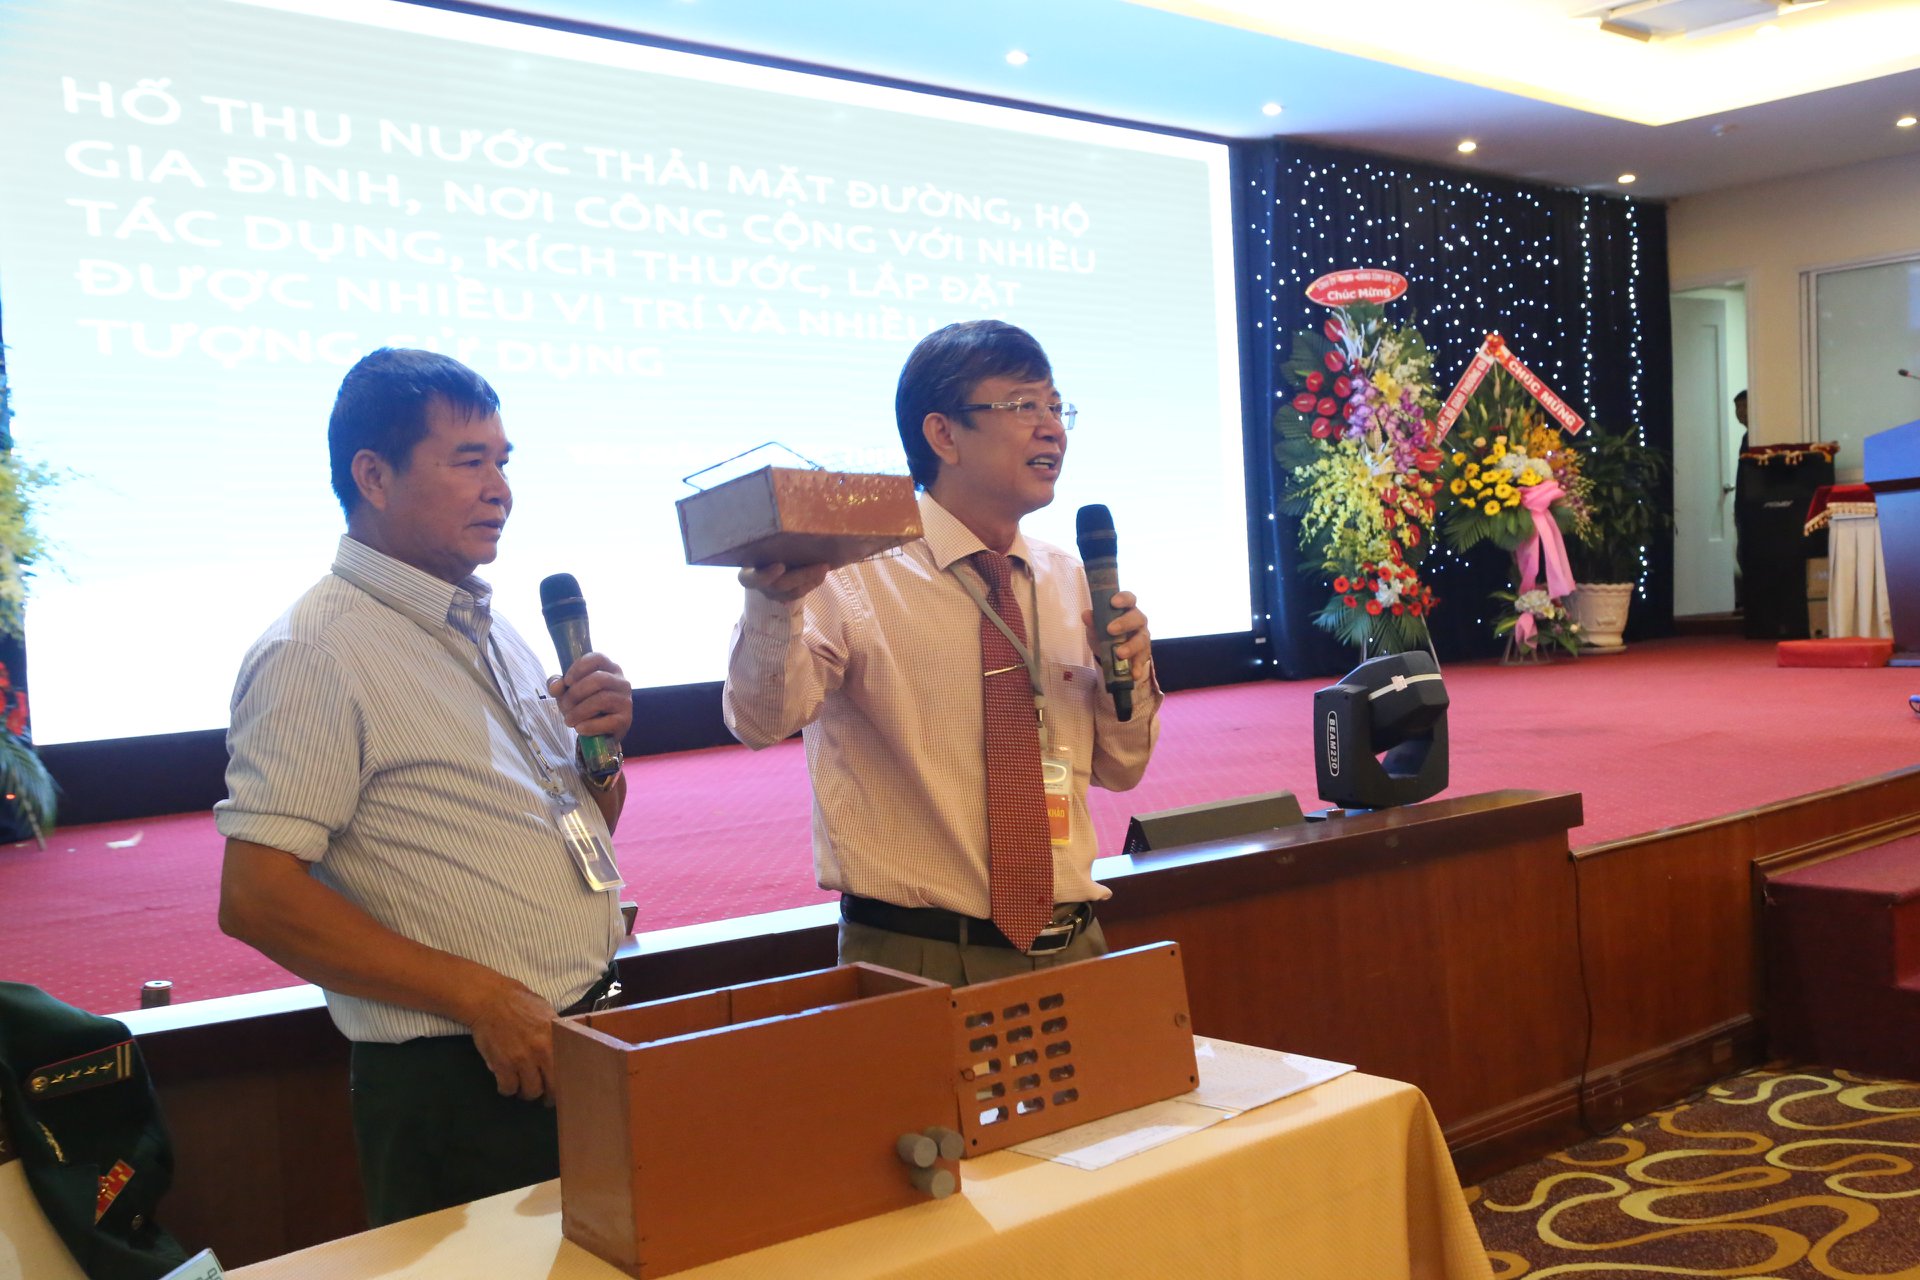 Ông Mai Thanh Quang, giám đốc sở KH&CN Bà Rịa - Vũng Tàu (phải) giúp đại tá về hưu Bùi Đức Thịnh trong phần thi của mình. Ảnh: BTC